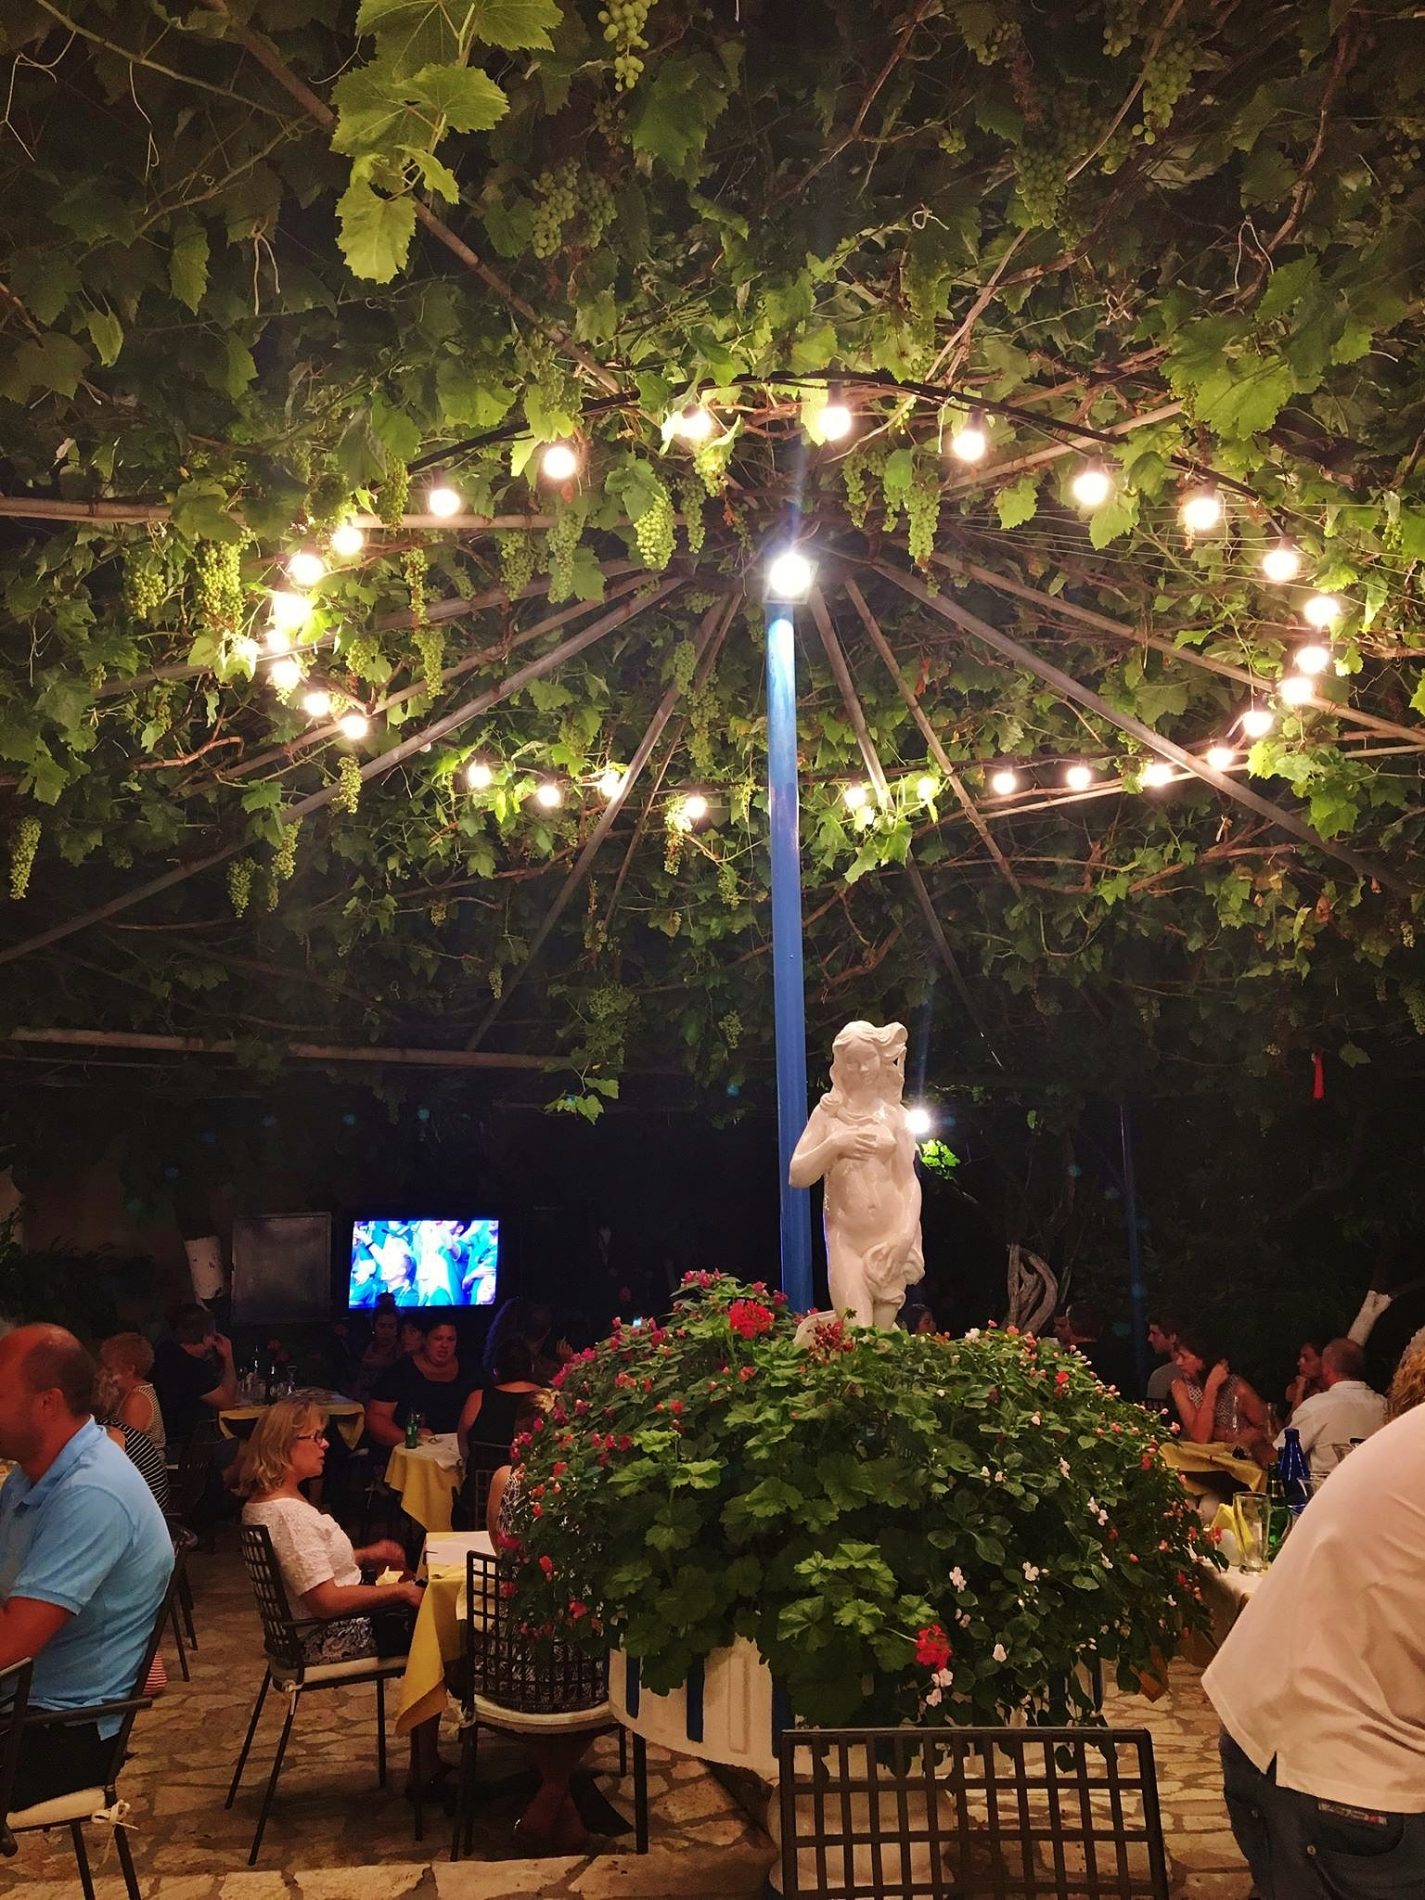 View of the patio at Sebatian's Taverna in Corfu, Greece.